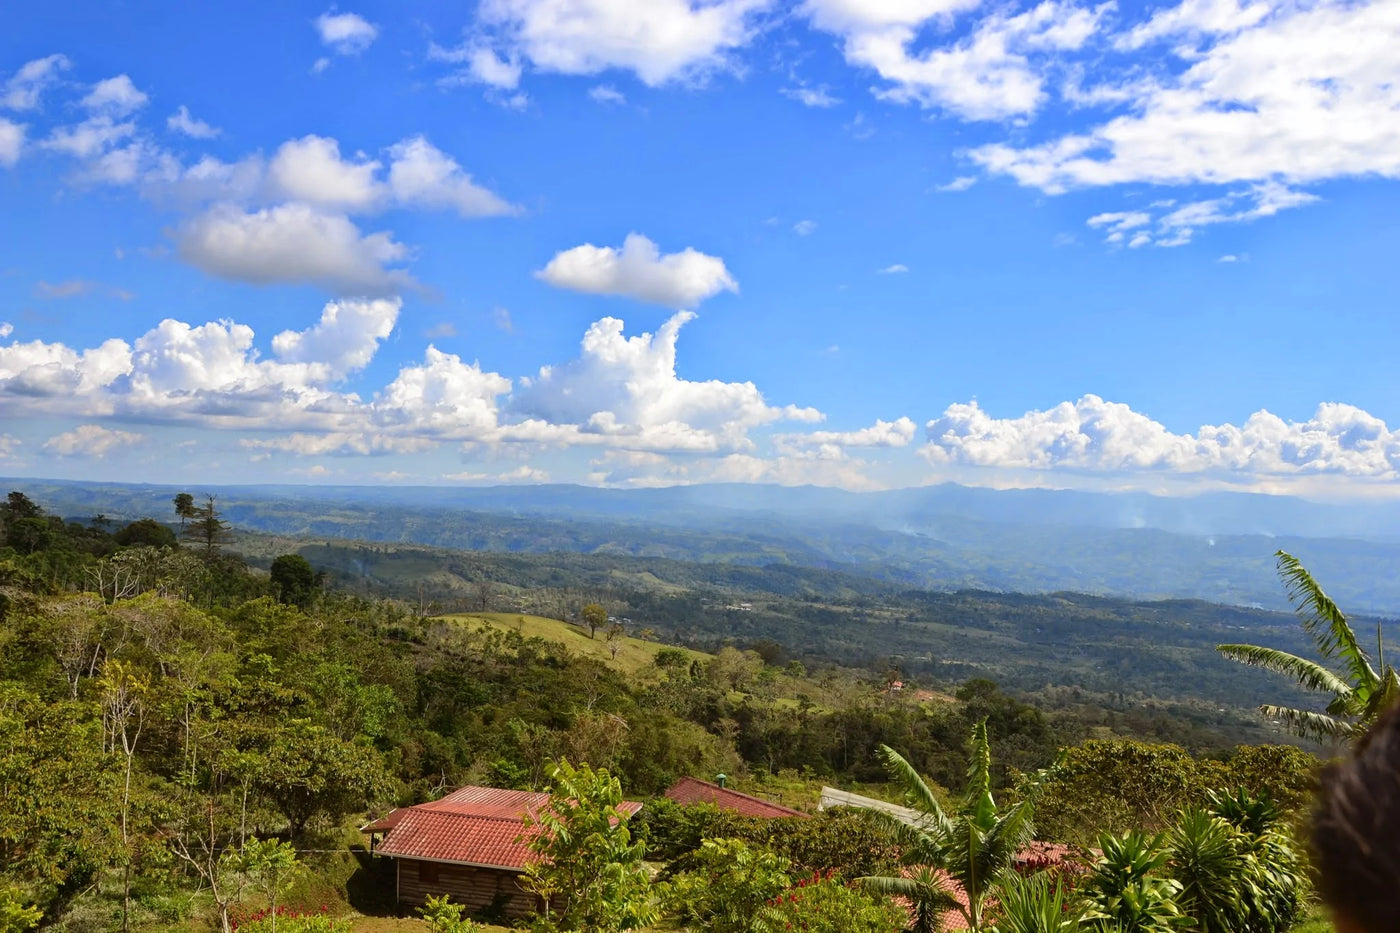 Landscape view of Coffea Diversa farm in Costa Rica